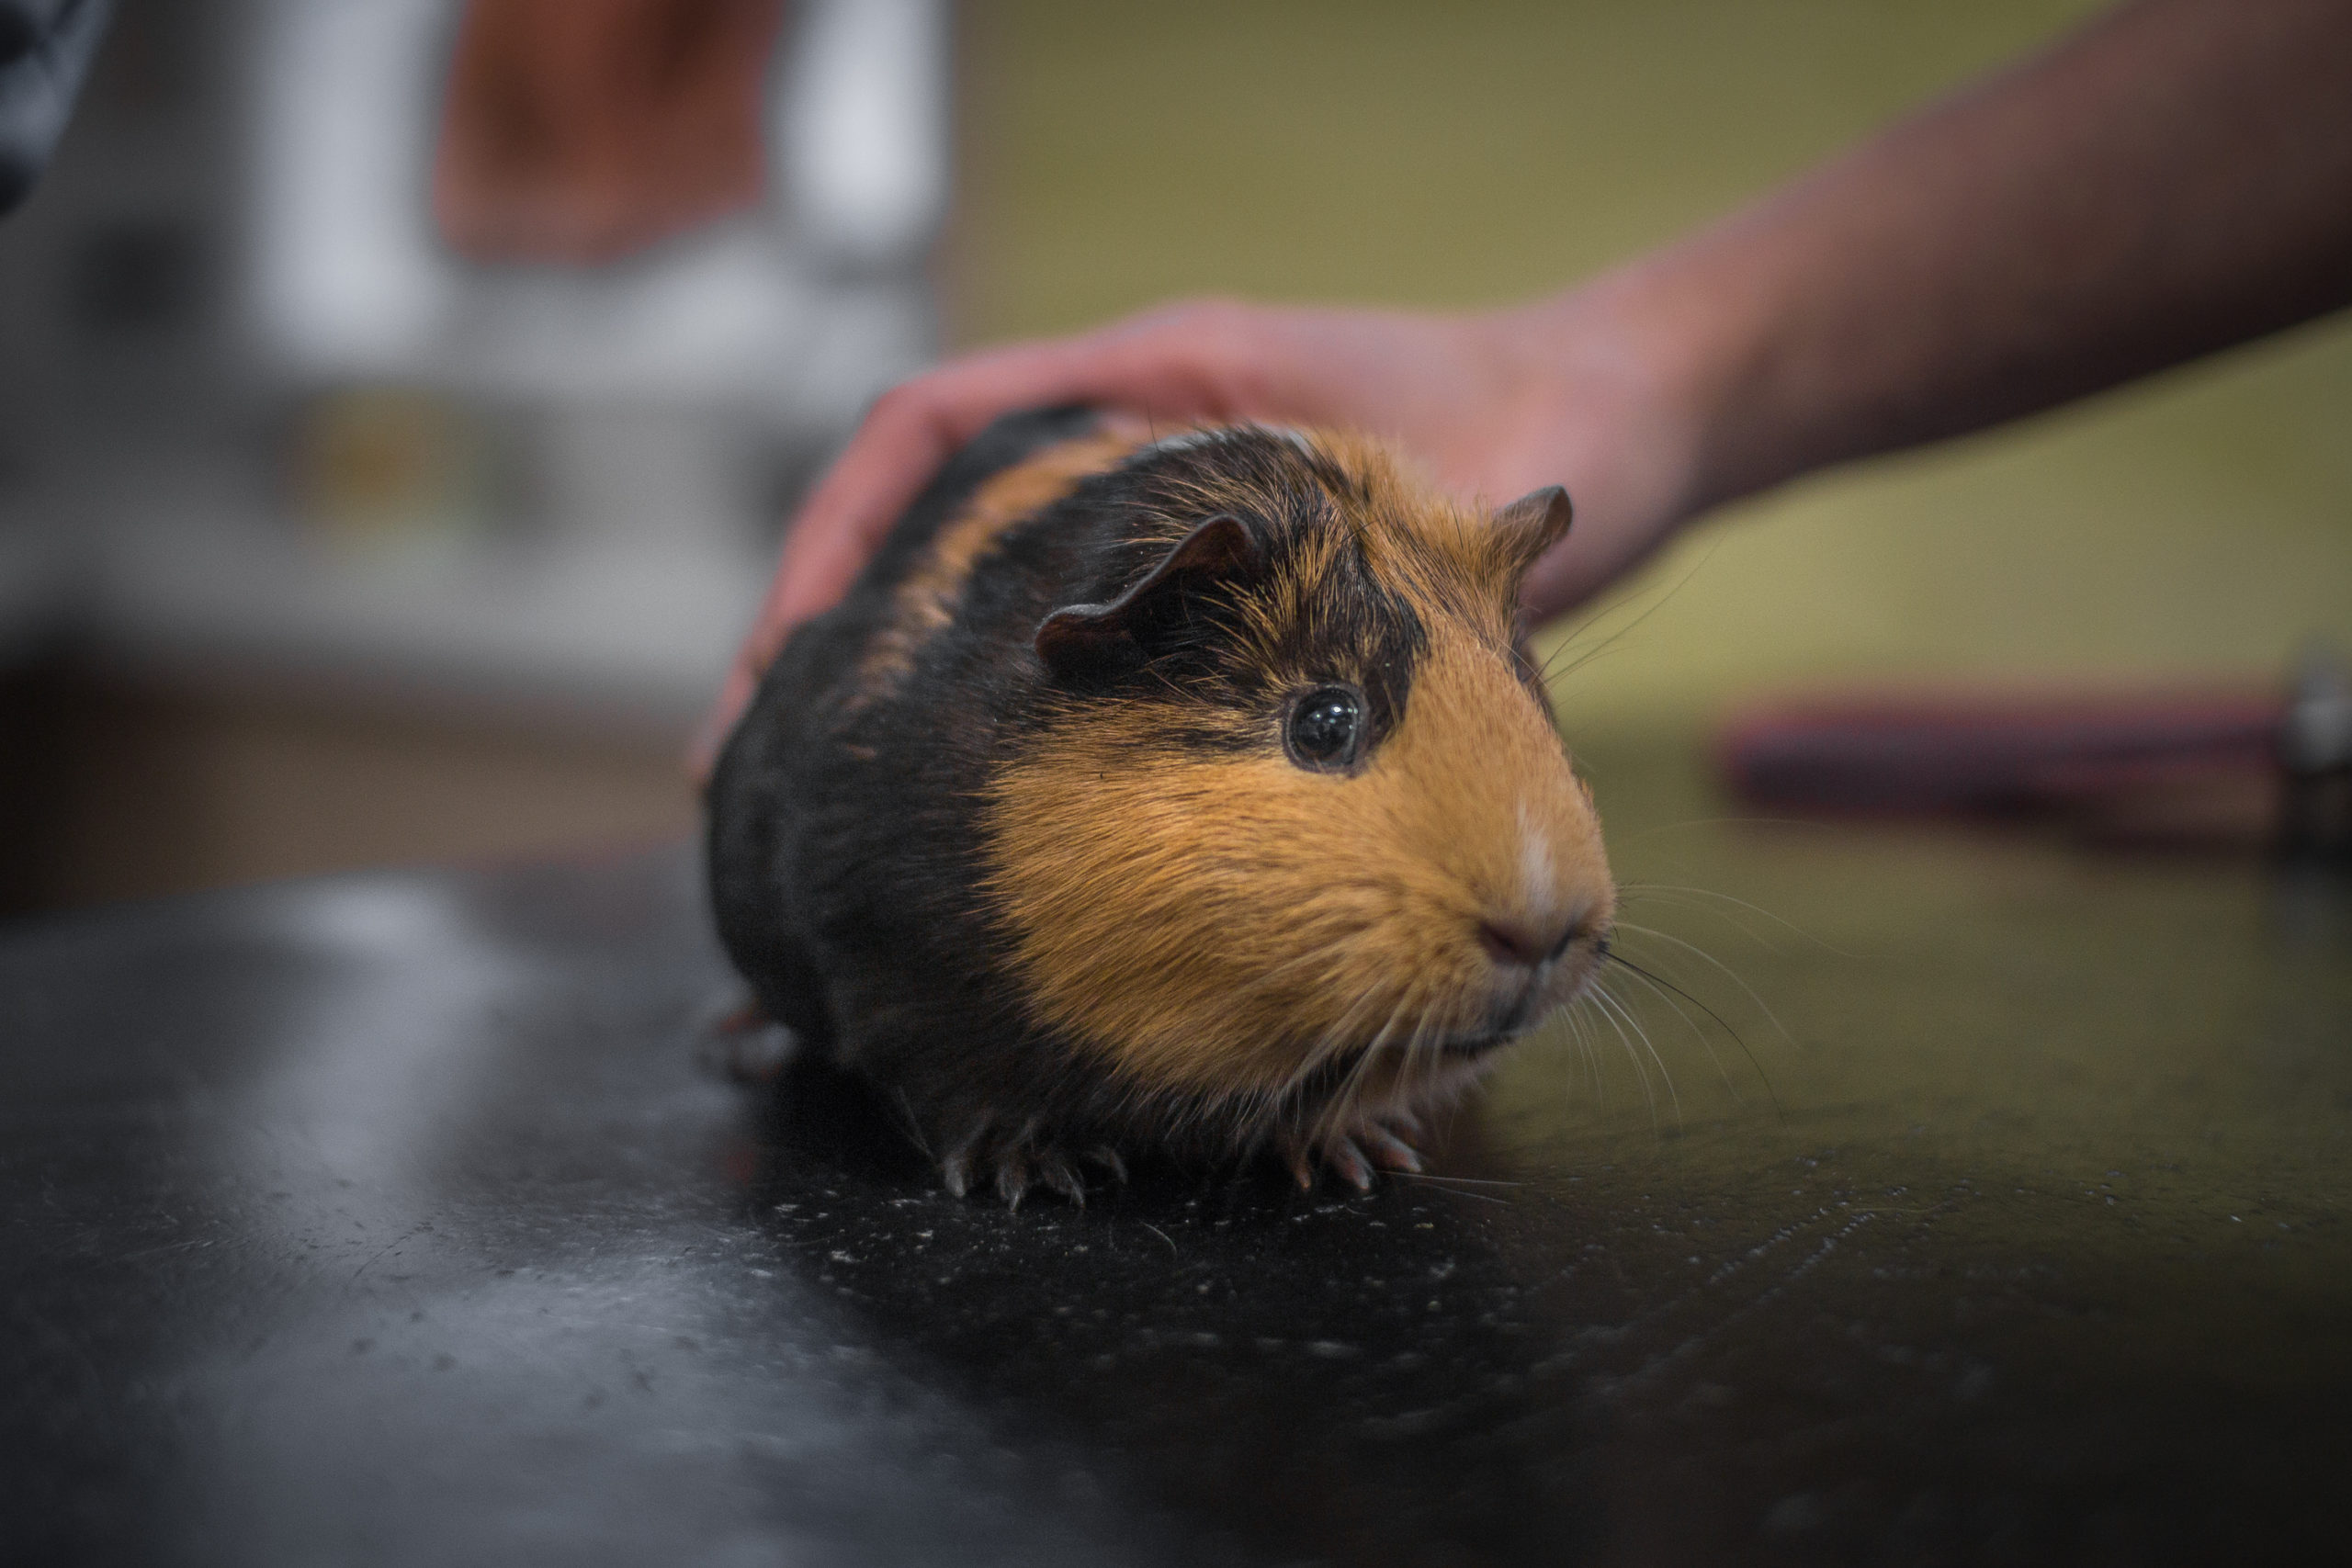 Petting a guinea pig health checks for animals